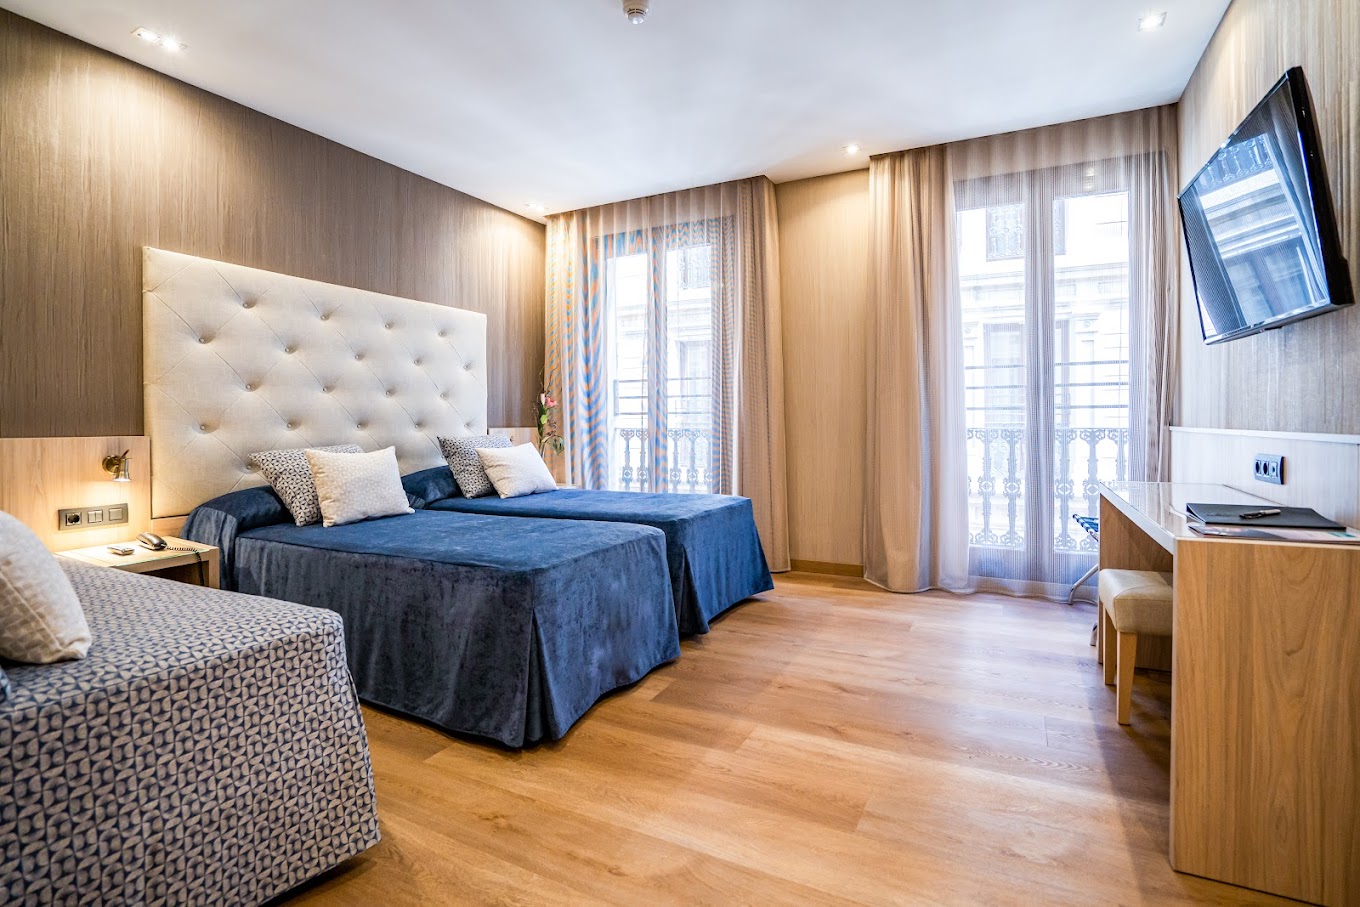 Rialto Hotel Barcelona'nın tüm odaları ahşap zeminli olup sade ve işlevsel bir tasarıma sahiptir.